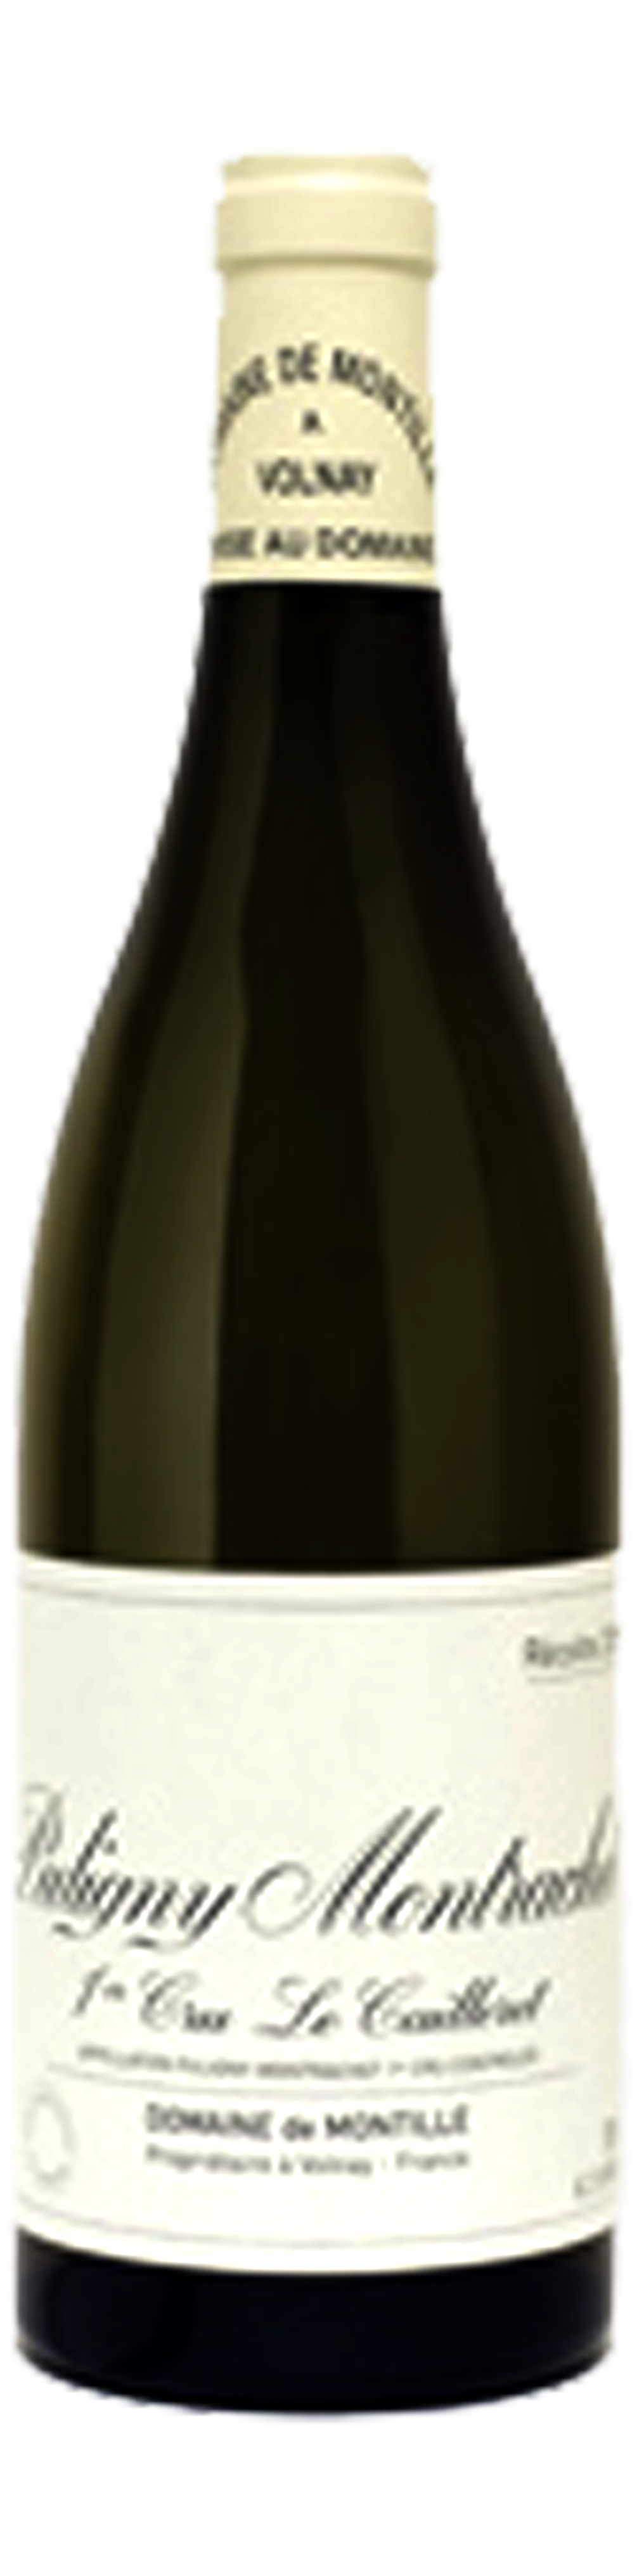 Bottle shot of 2012 Puligny Montrachet 1er Cru Le Cailleret